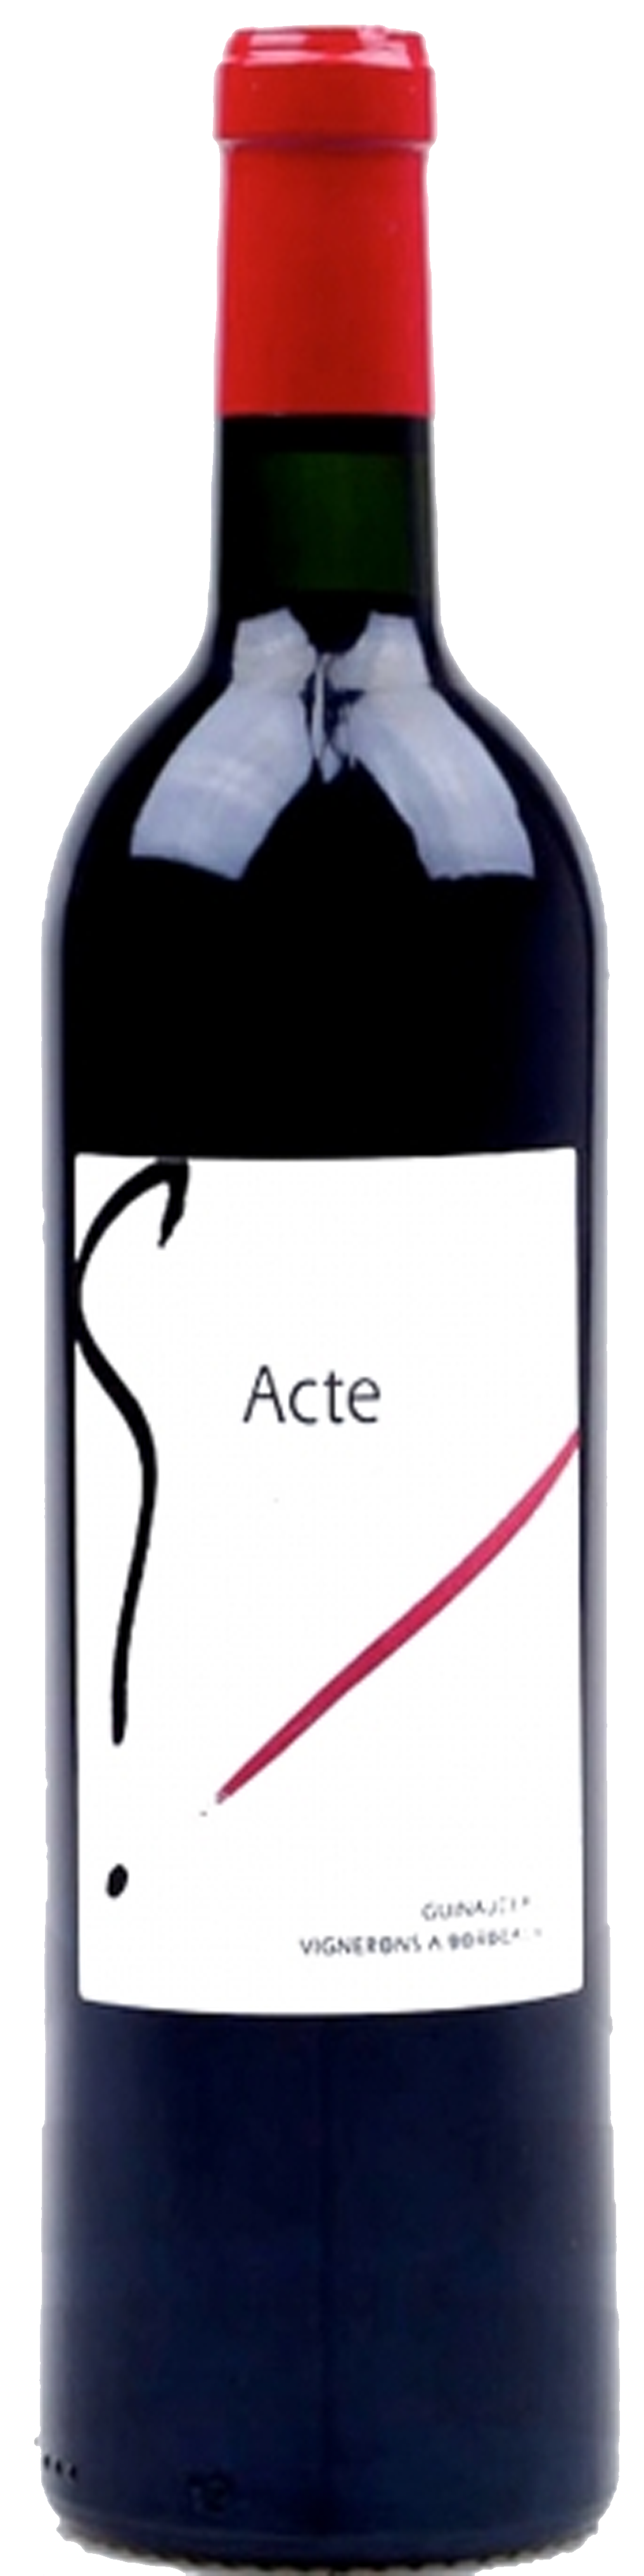 Image of product Acte 7, Bordeaux Superieur